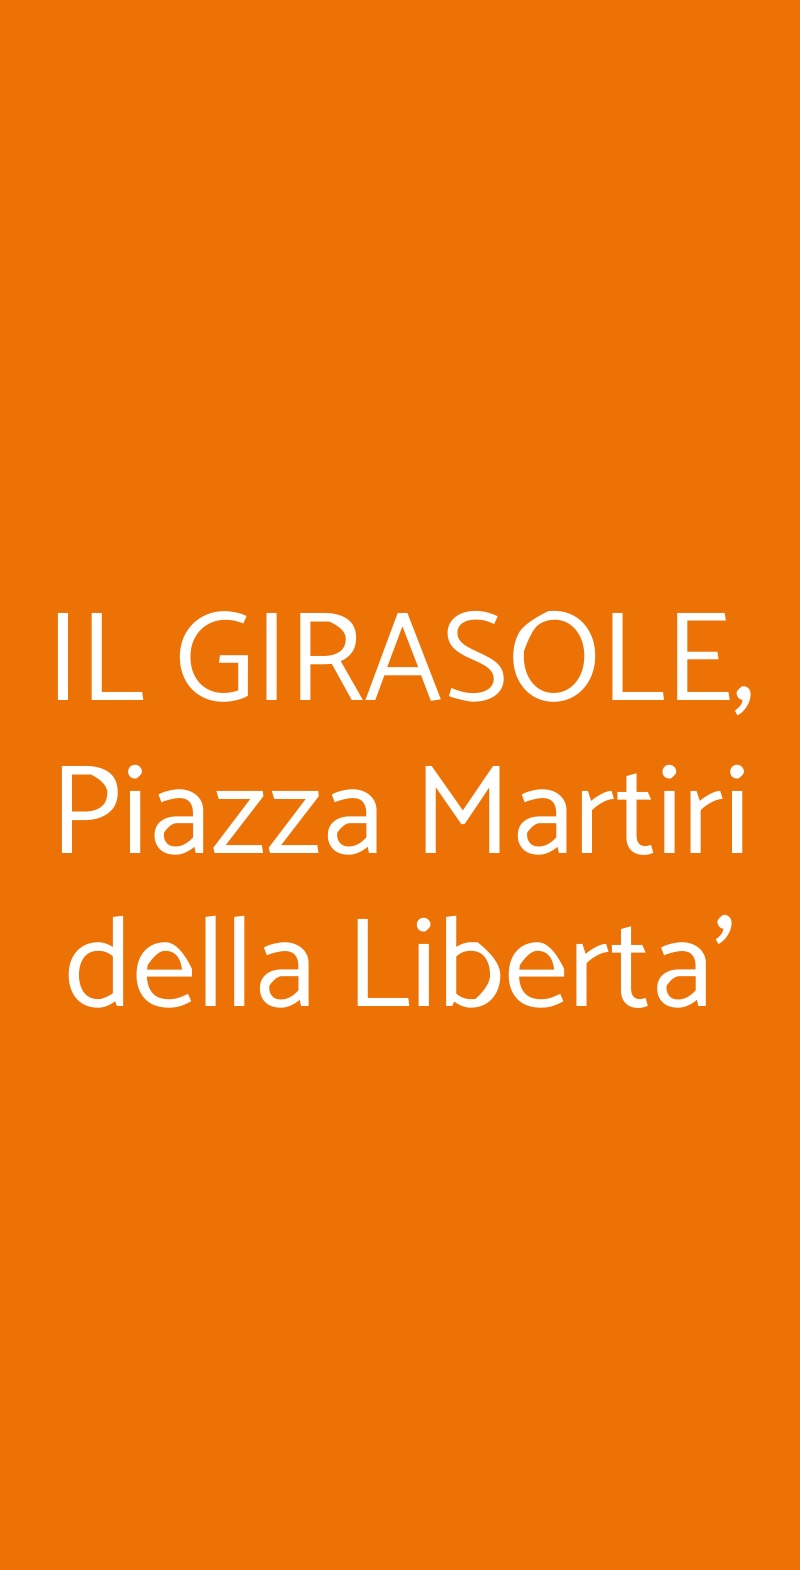 IL GIRASOLE, Piazza Martiri della Liberta' Faenza menù 1 pagina